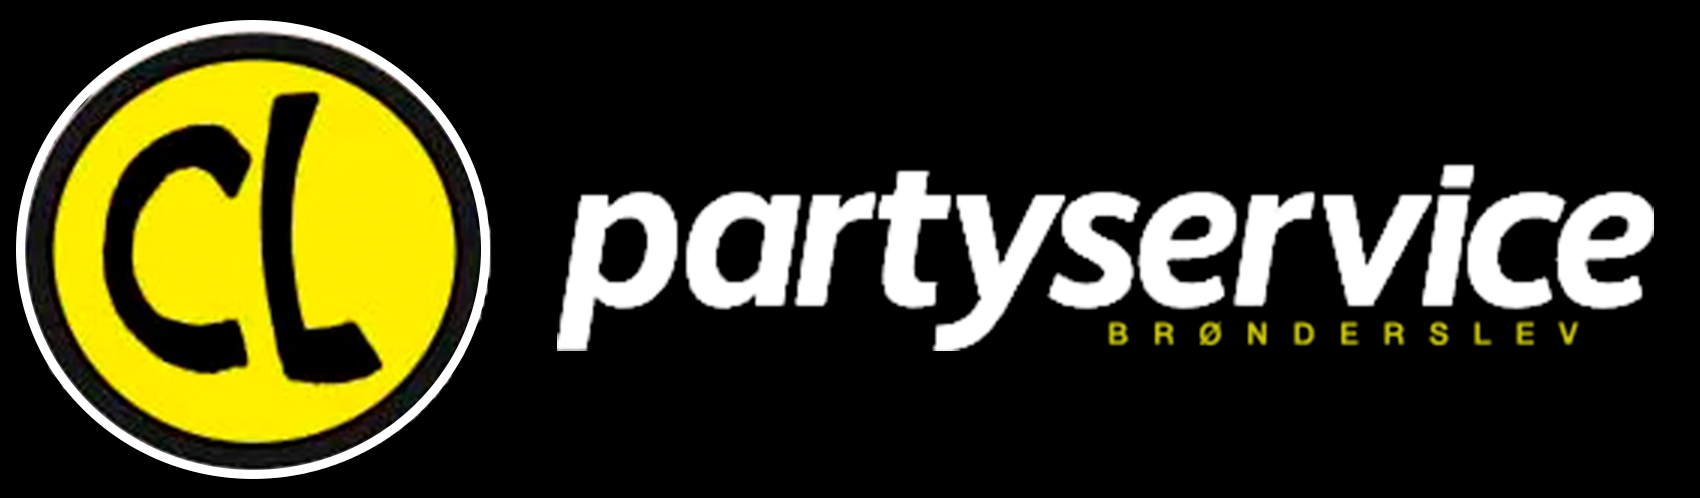 Brønderslev CL Partyservice